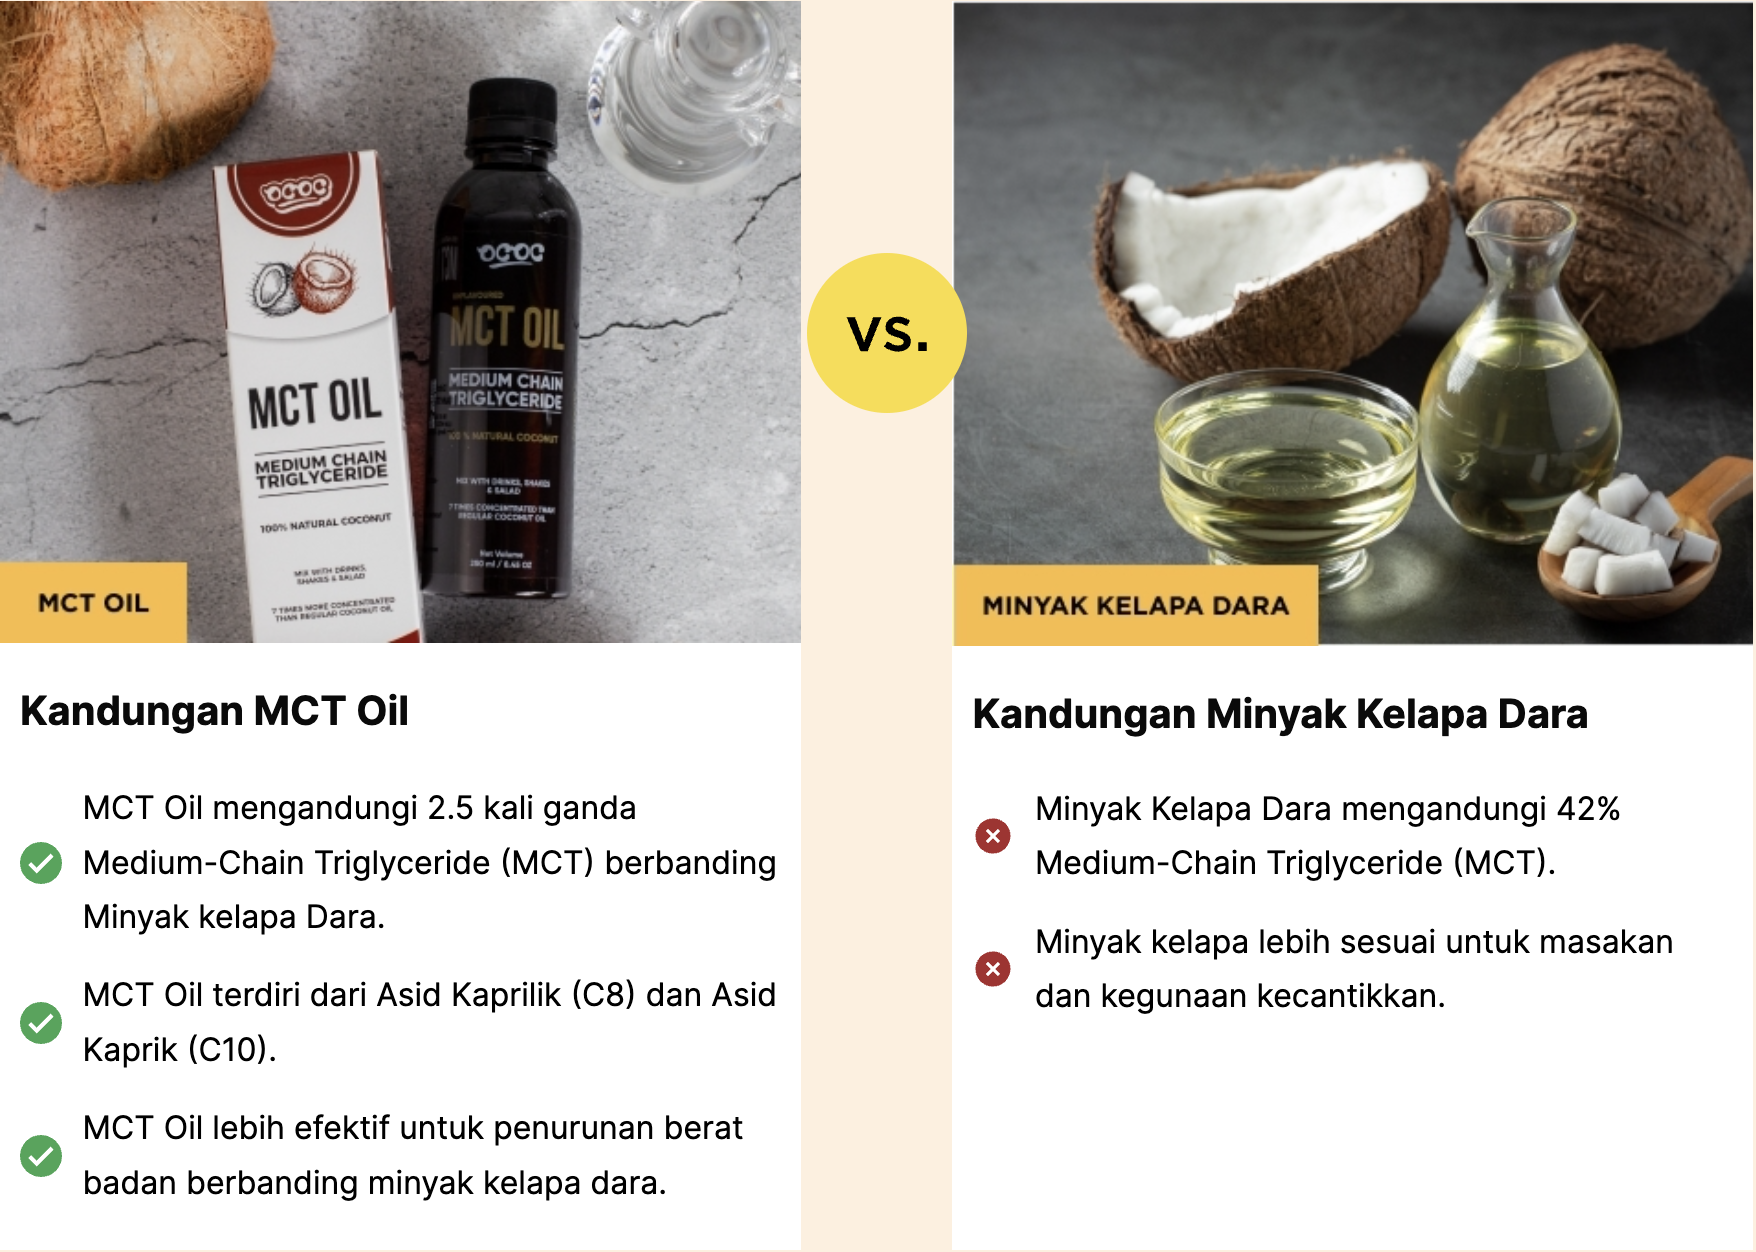 mct vs minyak kelapa dara